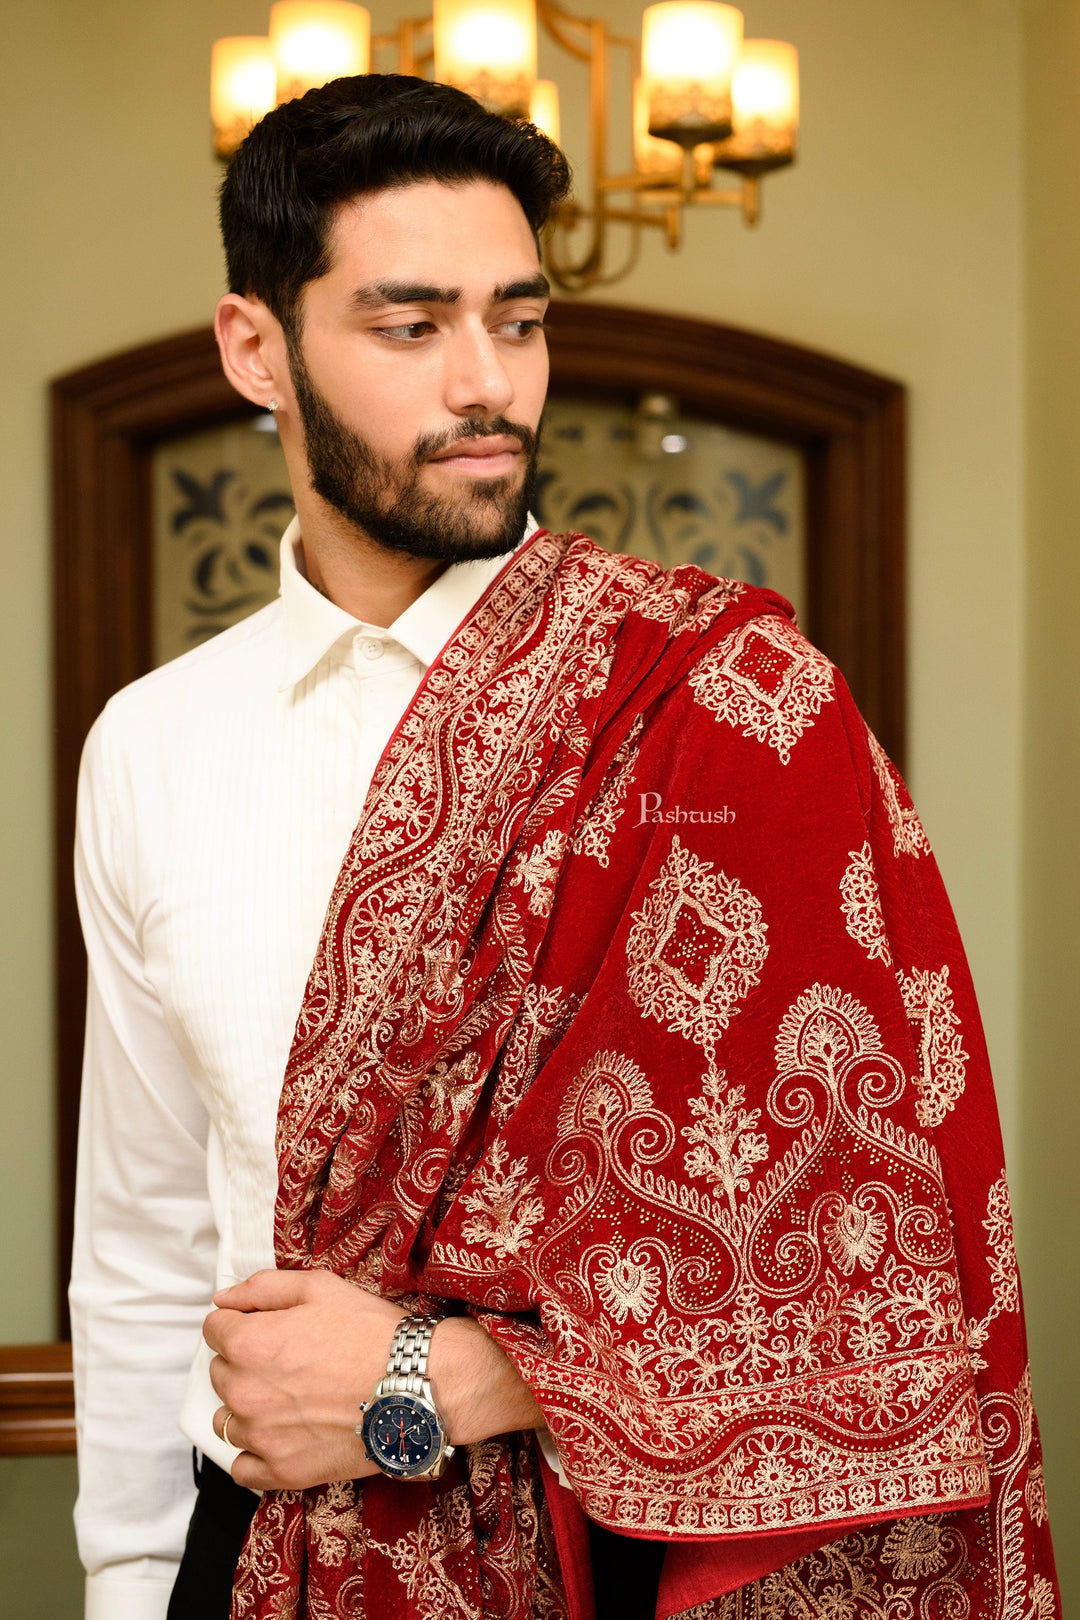 Pashtush India Mens Scarves Stoles and Mufflers Pashtush Mens Velvet Dupatta, Velvet Stole With Ethnic Embroidery Design, Maroon